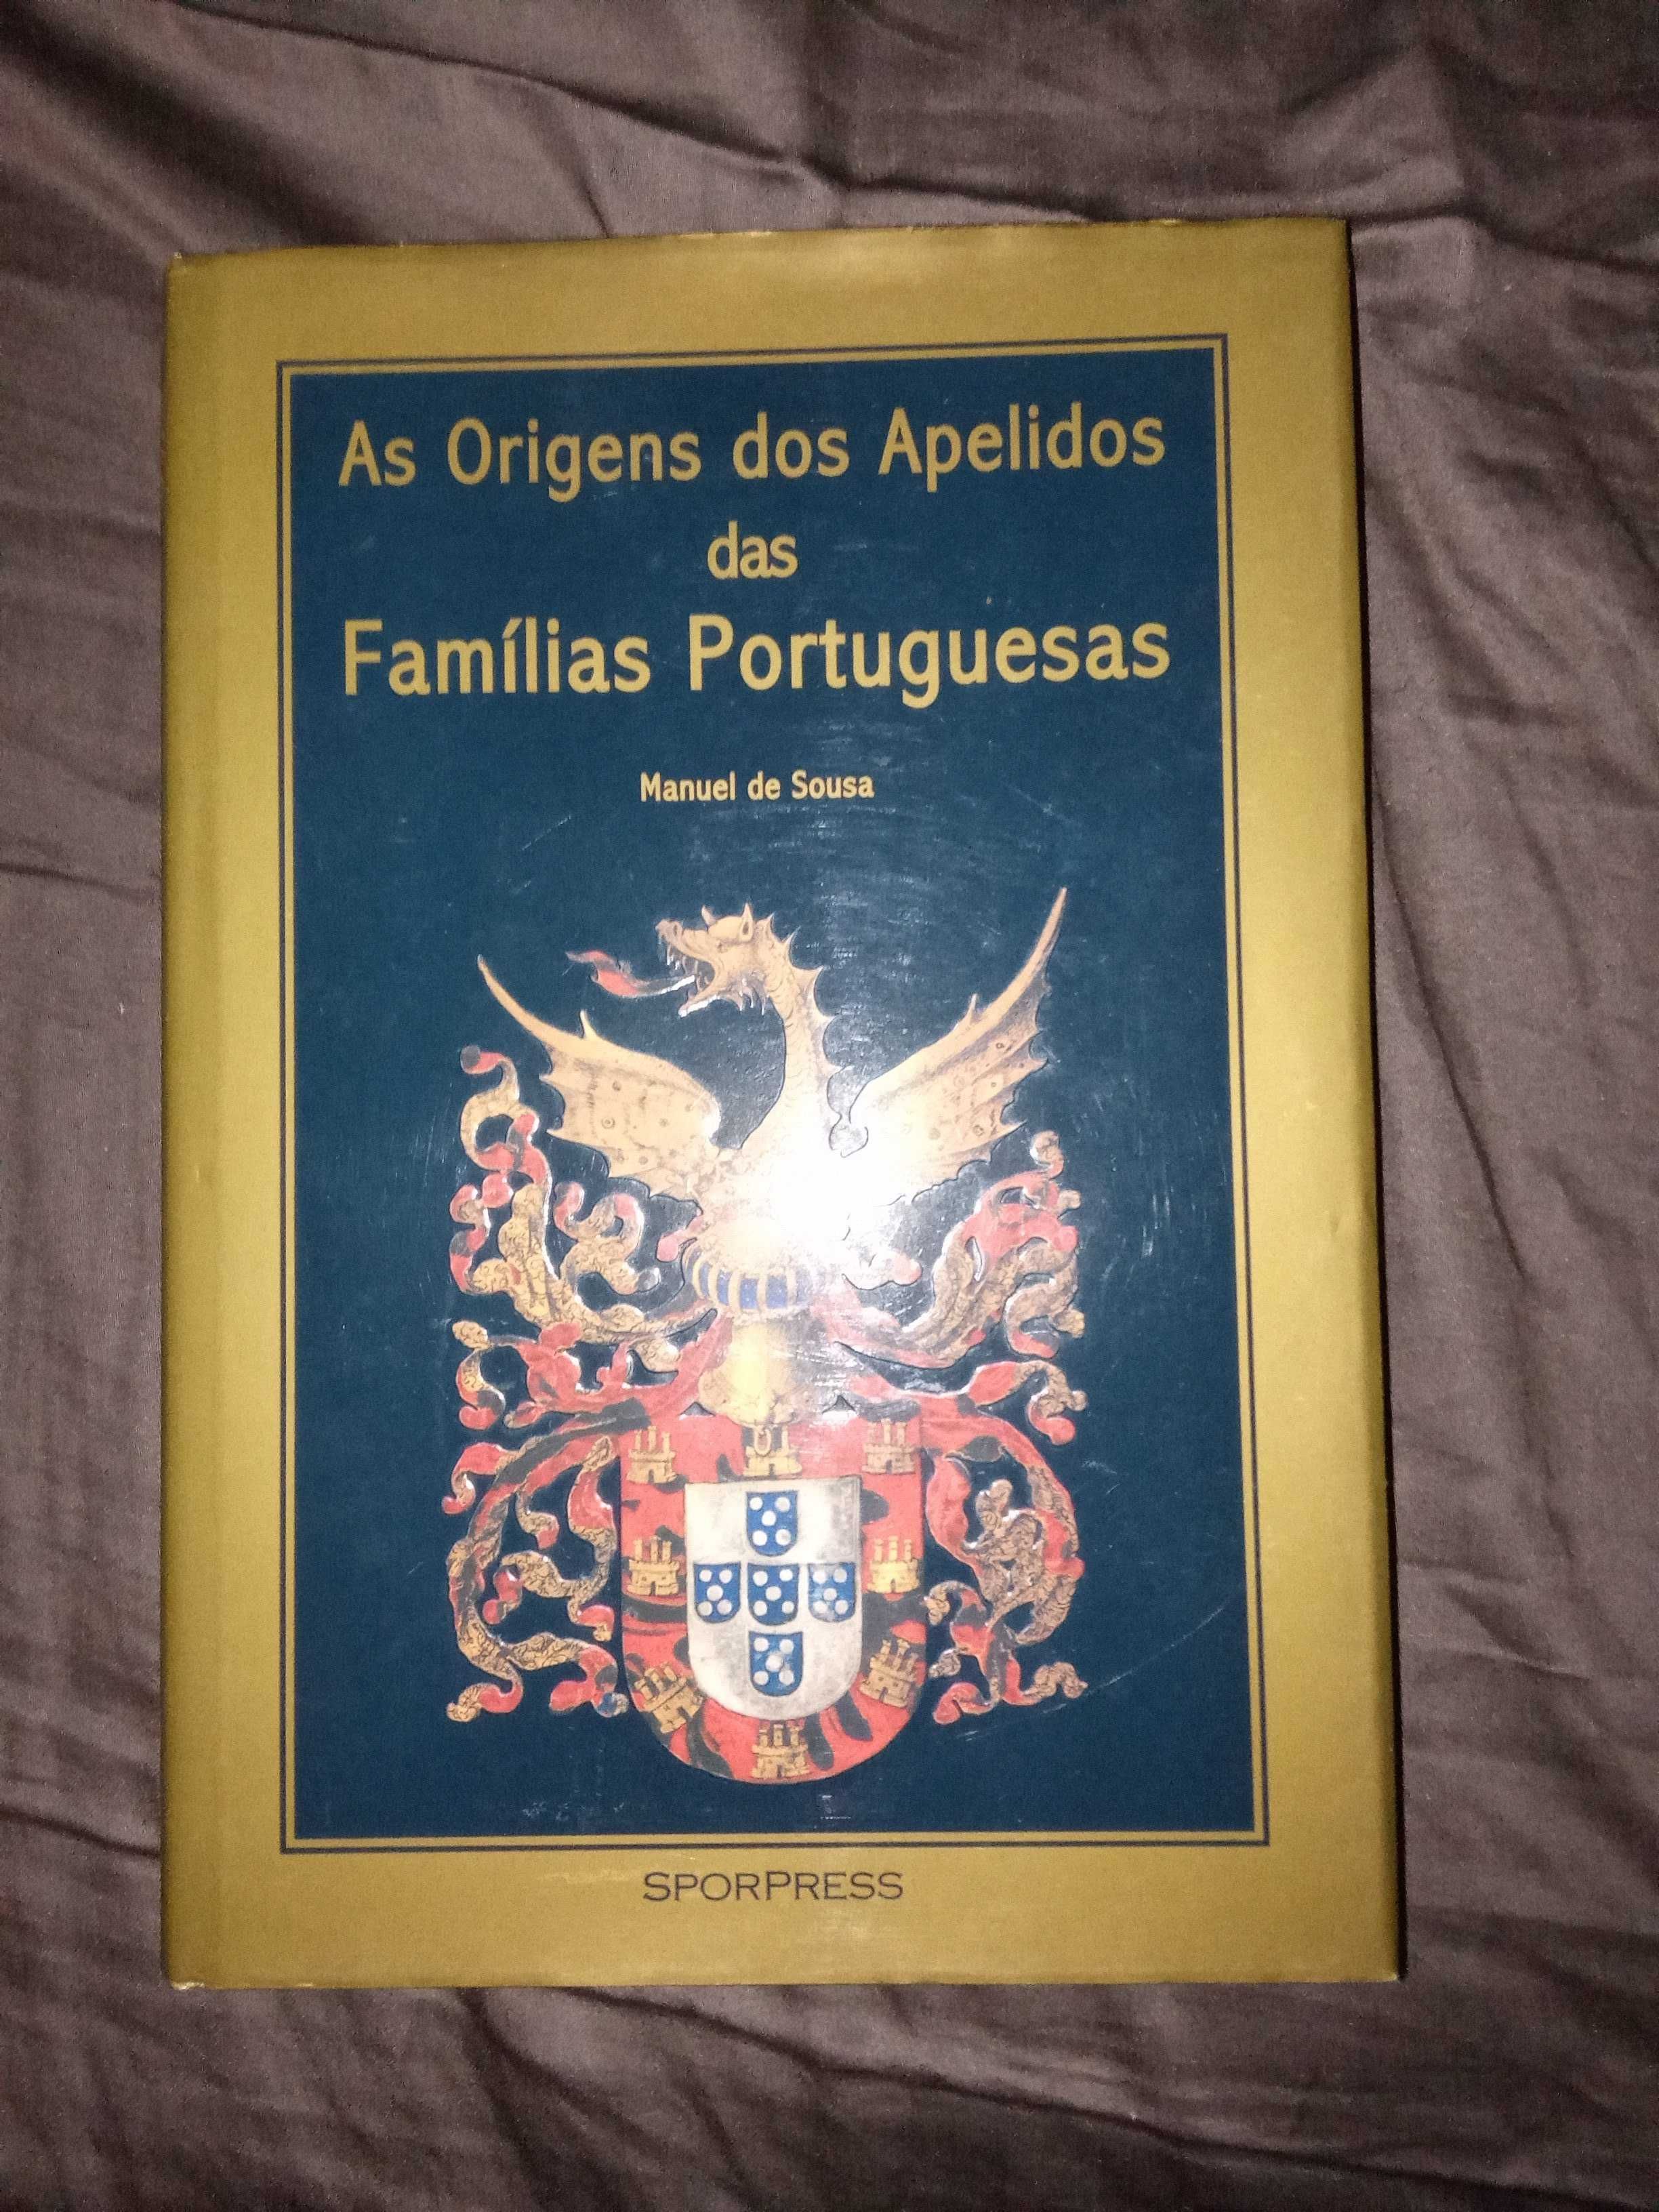 As Origens dos Apelidos das Famílias Portuguesas